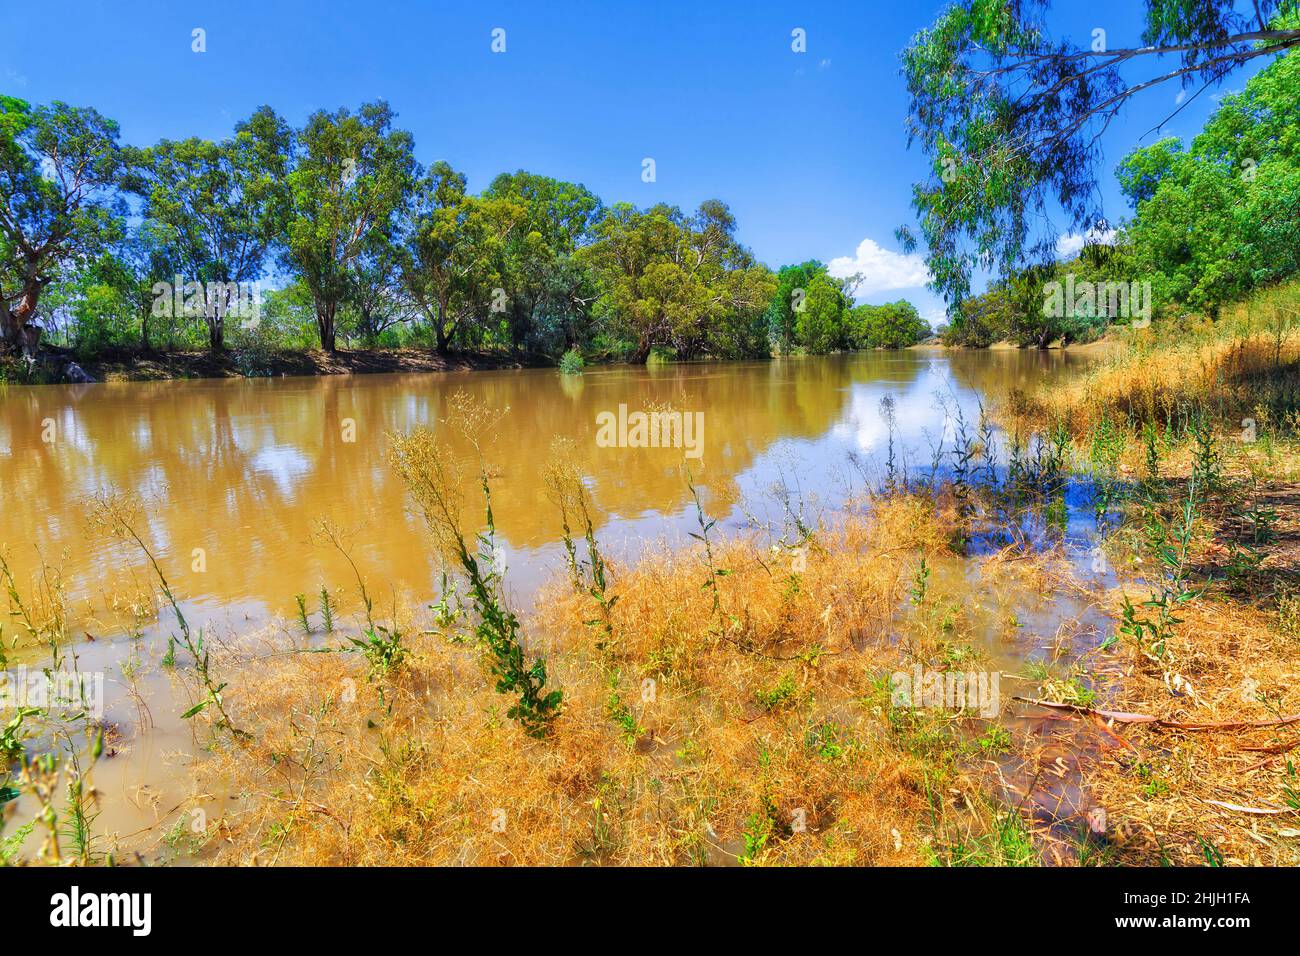 Darling River in Wilcannia, Stadt im australischen Outback - Wasserlauflandschaft vom Bäckerpark am Wasser. Stockfoto